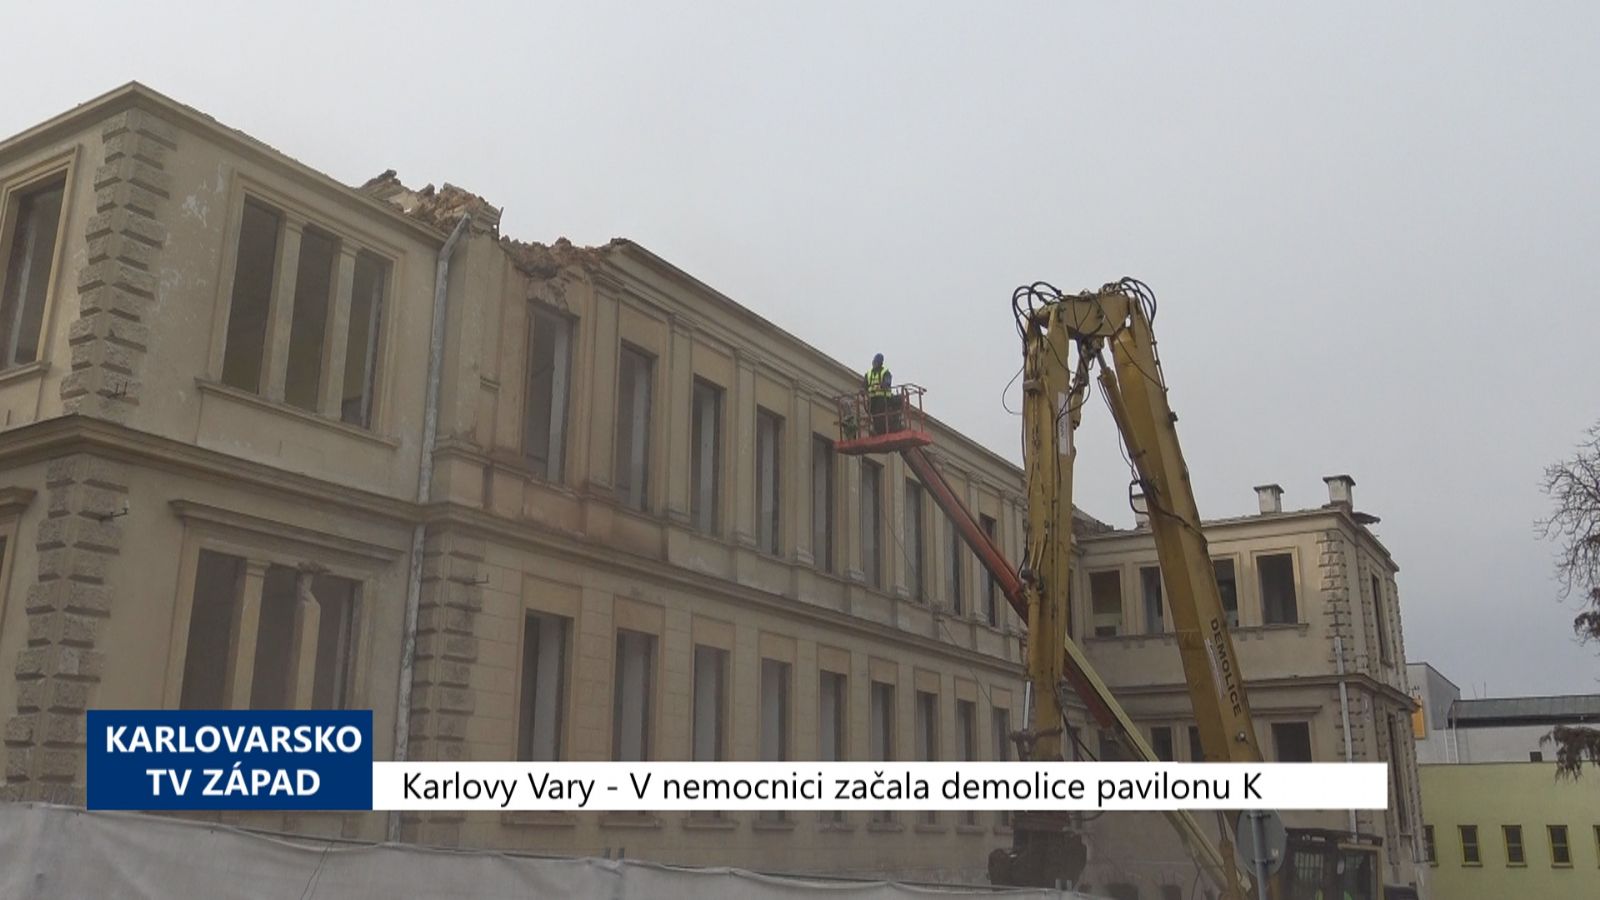 Karlovy Vary: V nemocnici začala demolice pavilonu K (TV Západ)